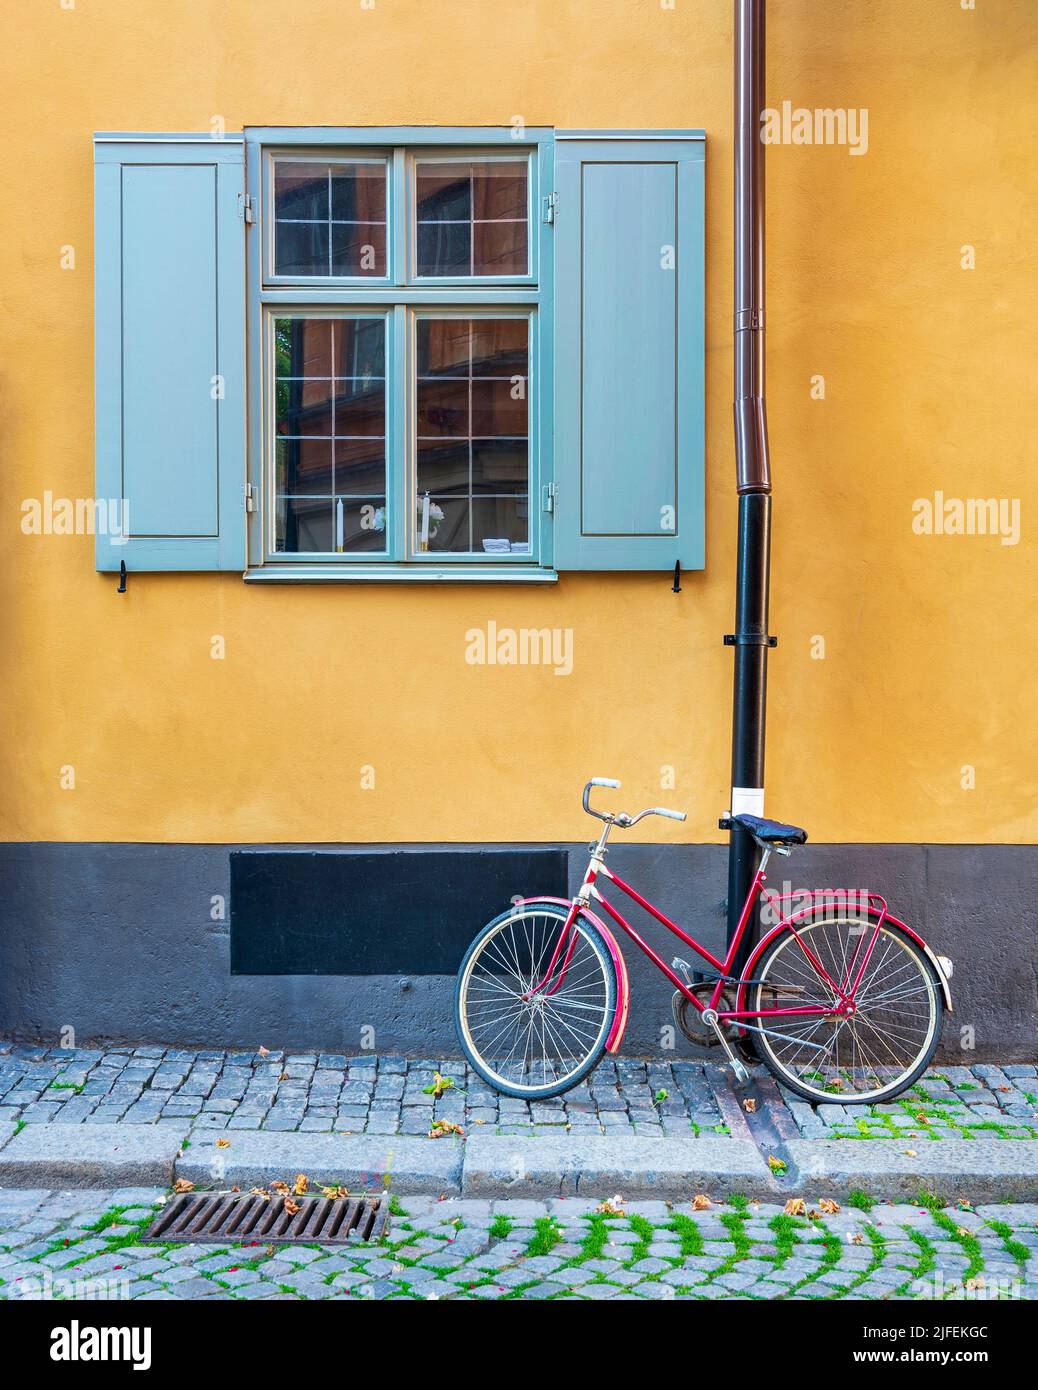 Bicicleta roja aparcada bajo una ventana antigua y tradicional con persianas azules en una pared naranja en una calle estrecha de adoquines en el casco antiguo de Gamla Stan, Estocolmo, Suecia Foto de stock